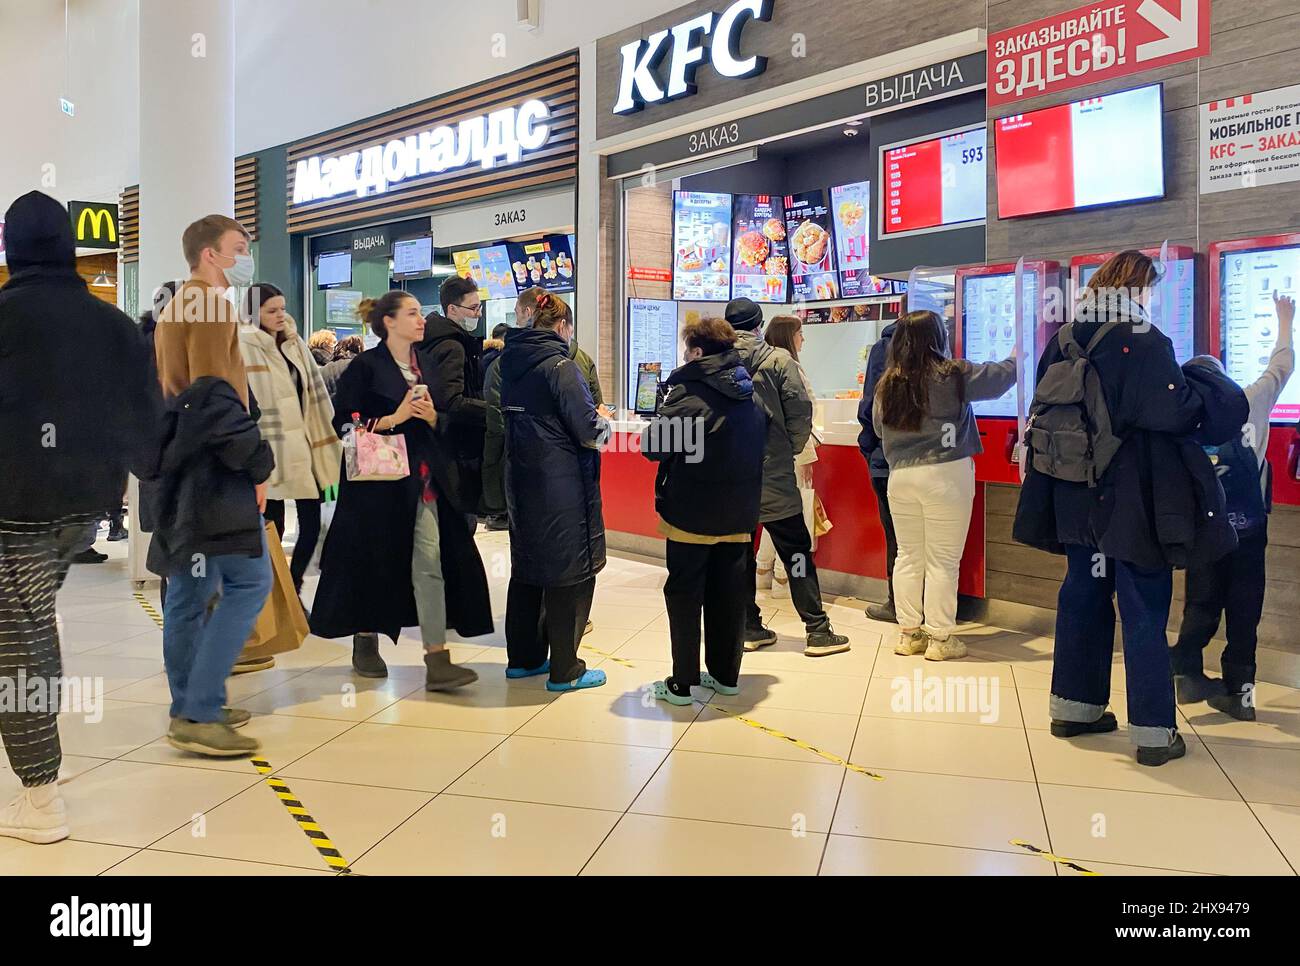 Moscou, Russie, le 2022 mars : les fast food Corners McDonald's et KFC travaillent les derniers jours avant la fermeture en raison de sanctions. Beaucoup de gens sont standi Banque D'Images